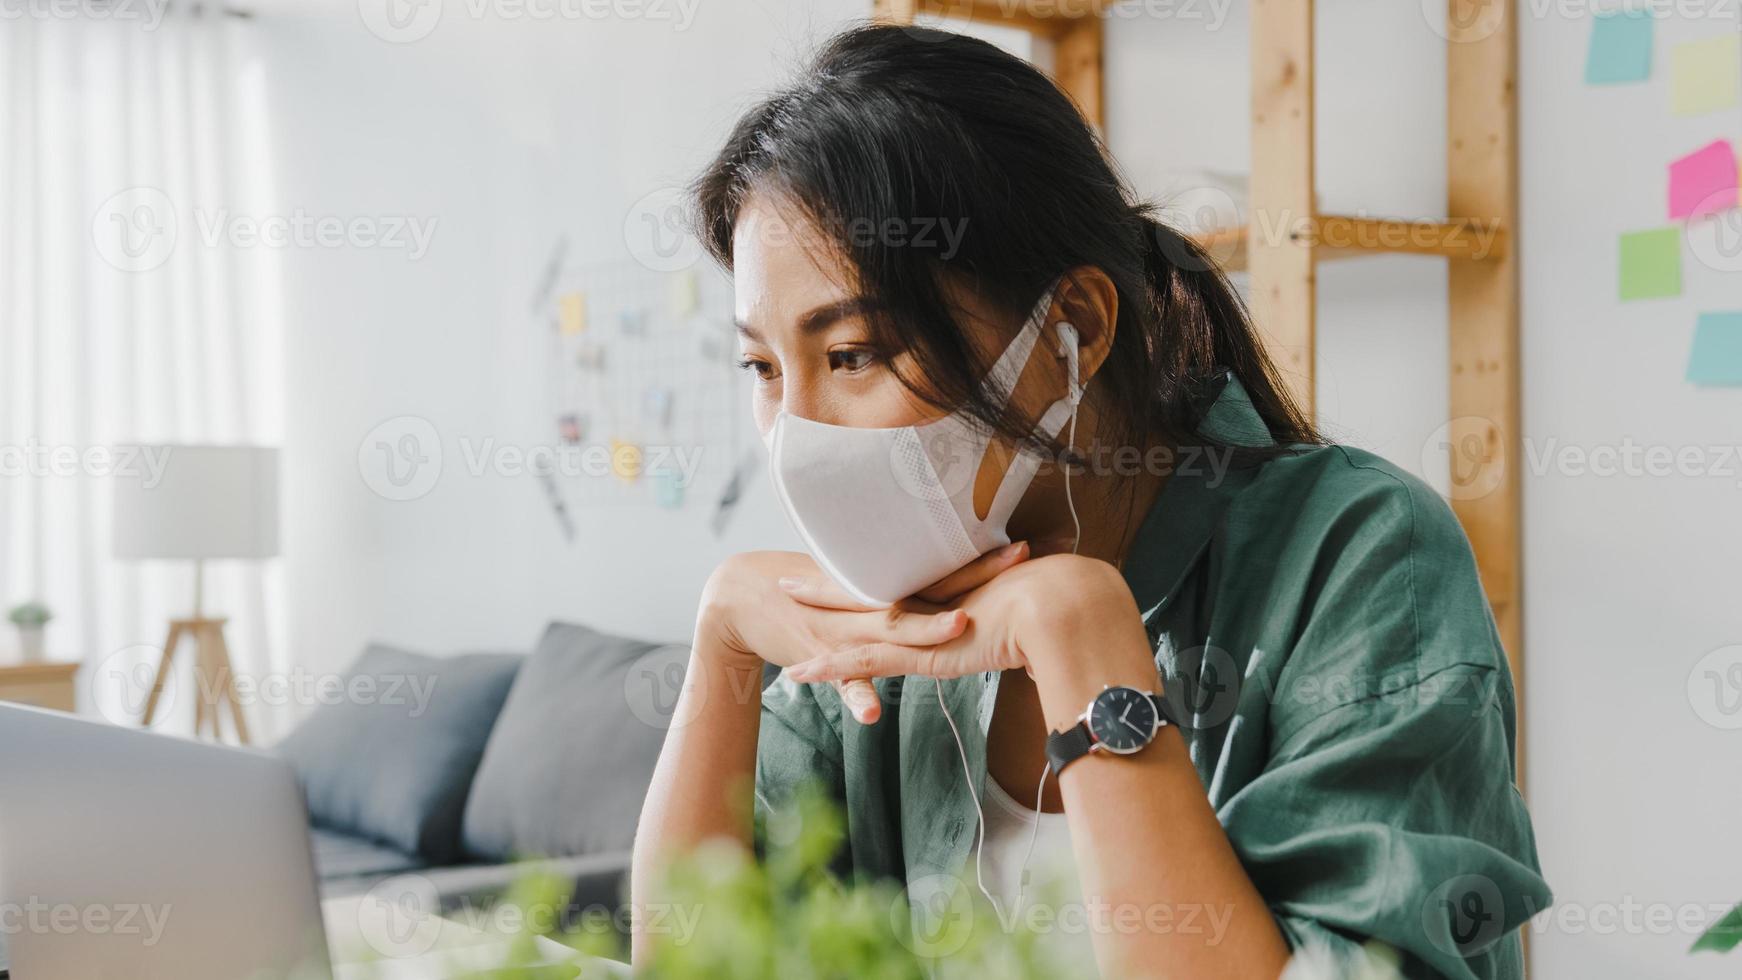 azië zakenvrouw die medisch gezichtsmasker draagt met behulp van laptop praat met collega's over plan in videogesprek terwijl ze vanuit huis in de woonkamer werkt. sociale afstand, quarantaine voor preventie van het coronavirus. foto